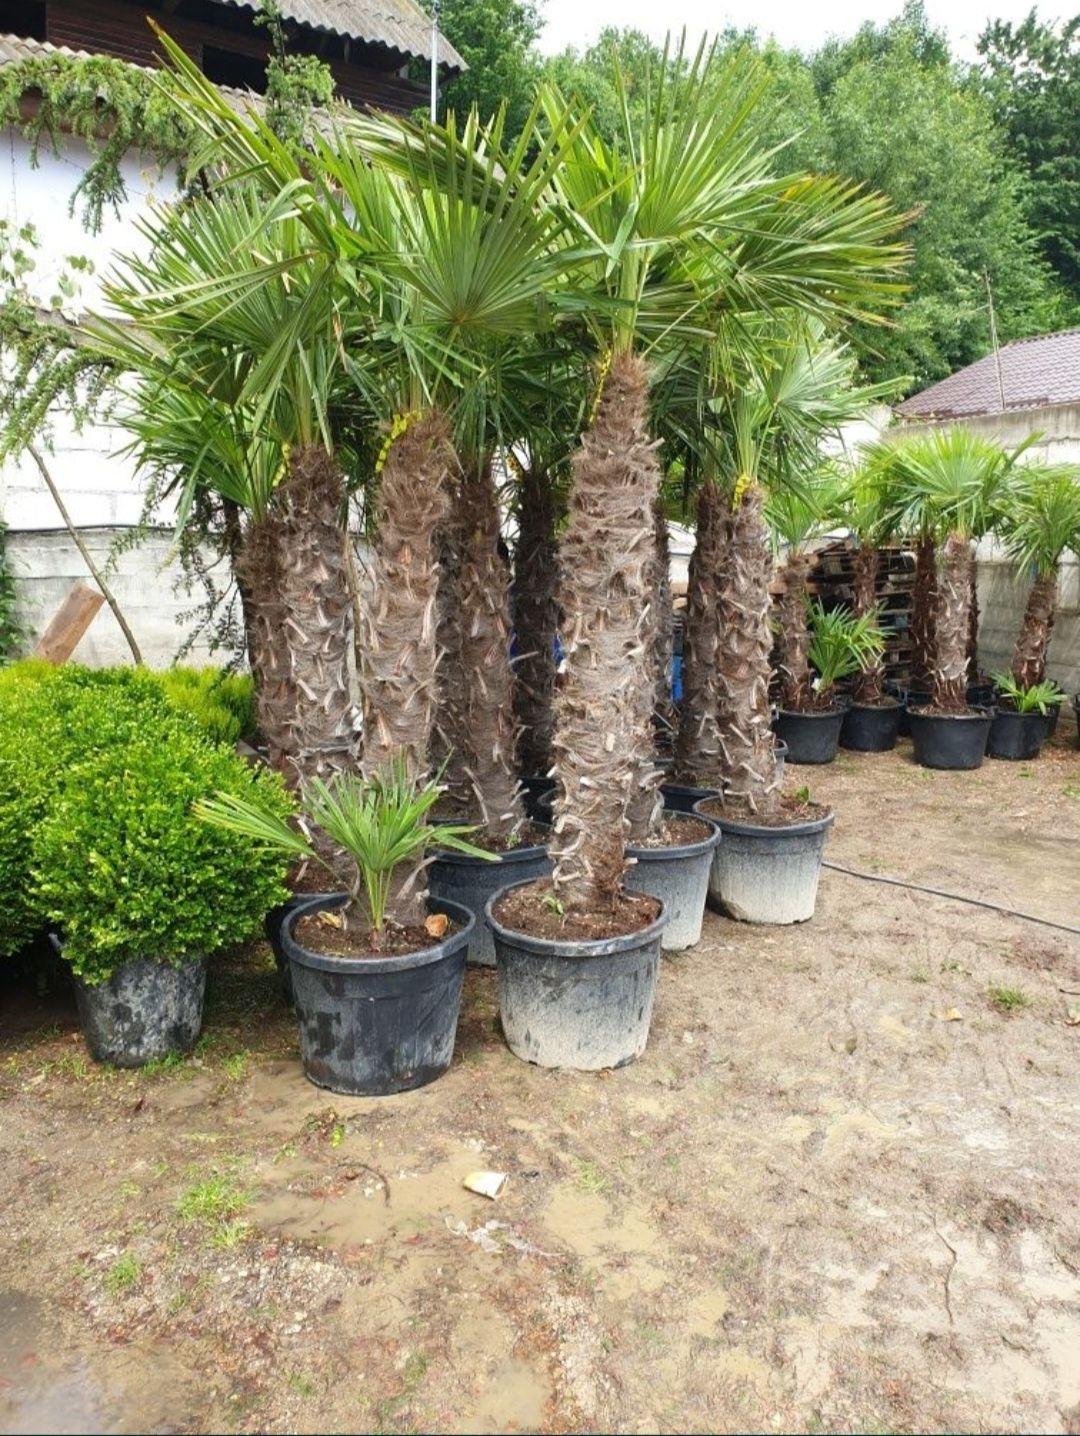 Vând Palmieri Trachycarpus Fortunei. Calitate extra